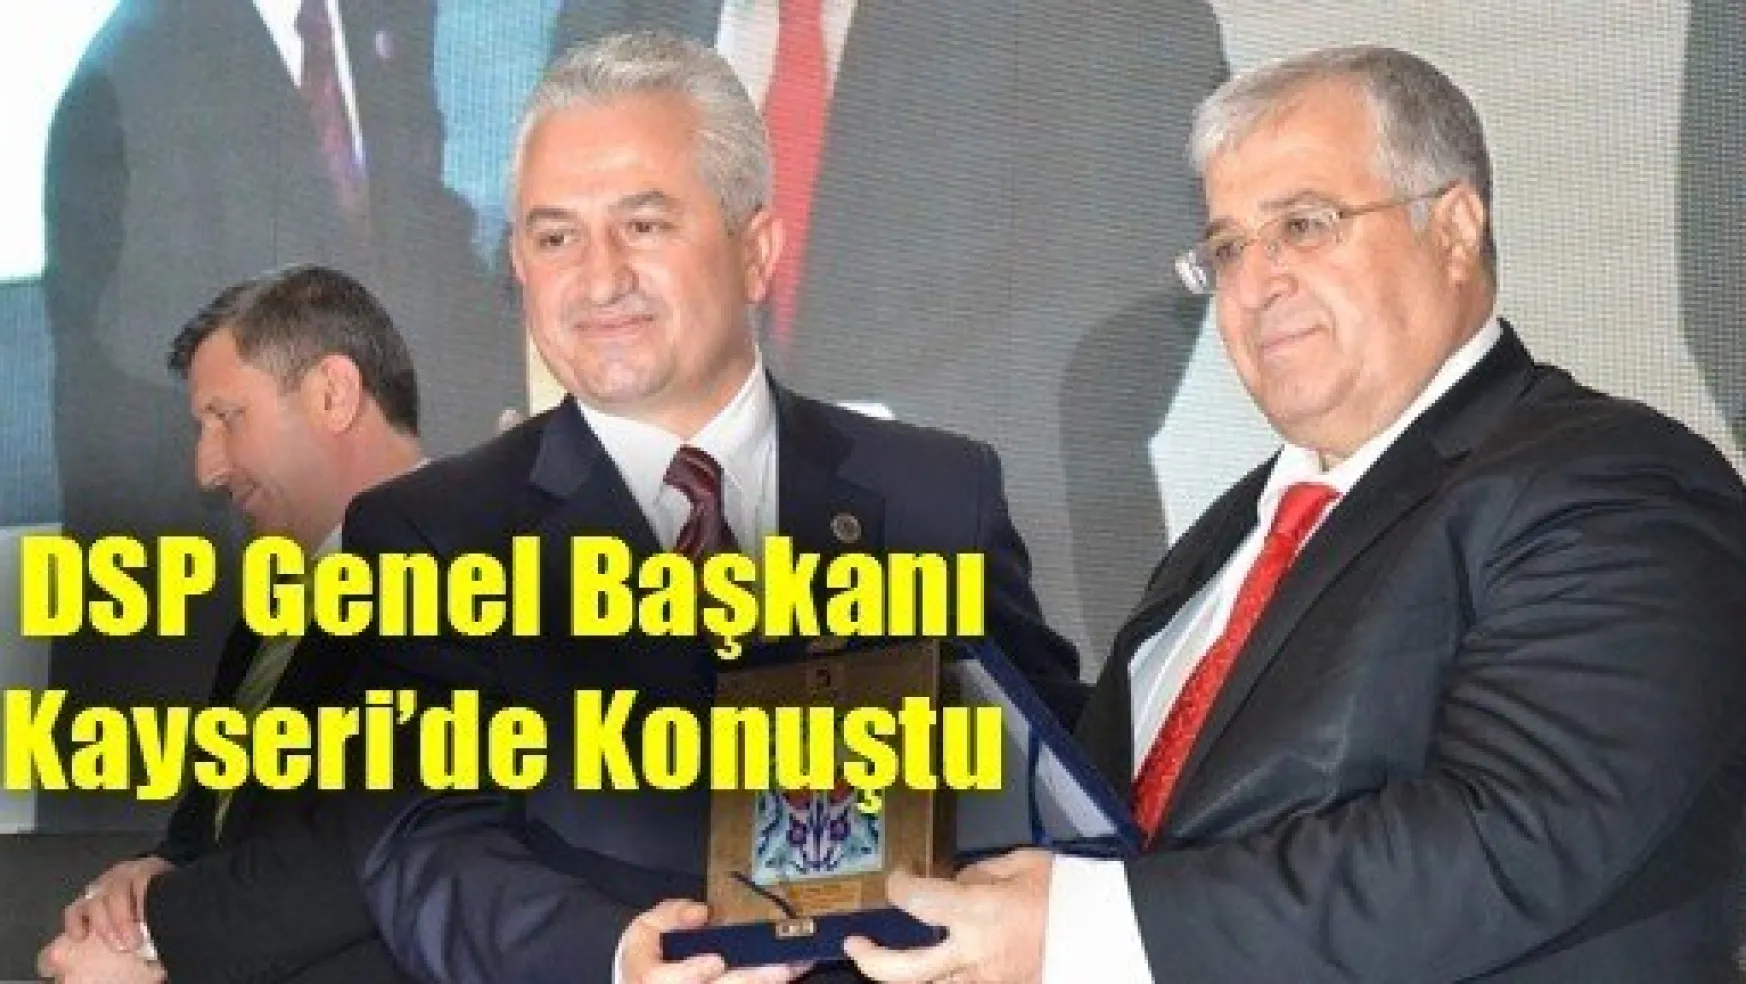 DSP Genel Başkanı Kayseri'de Konuştu